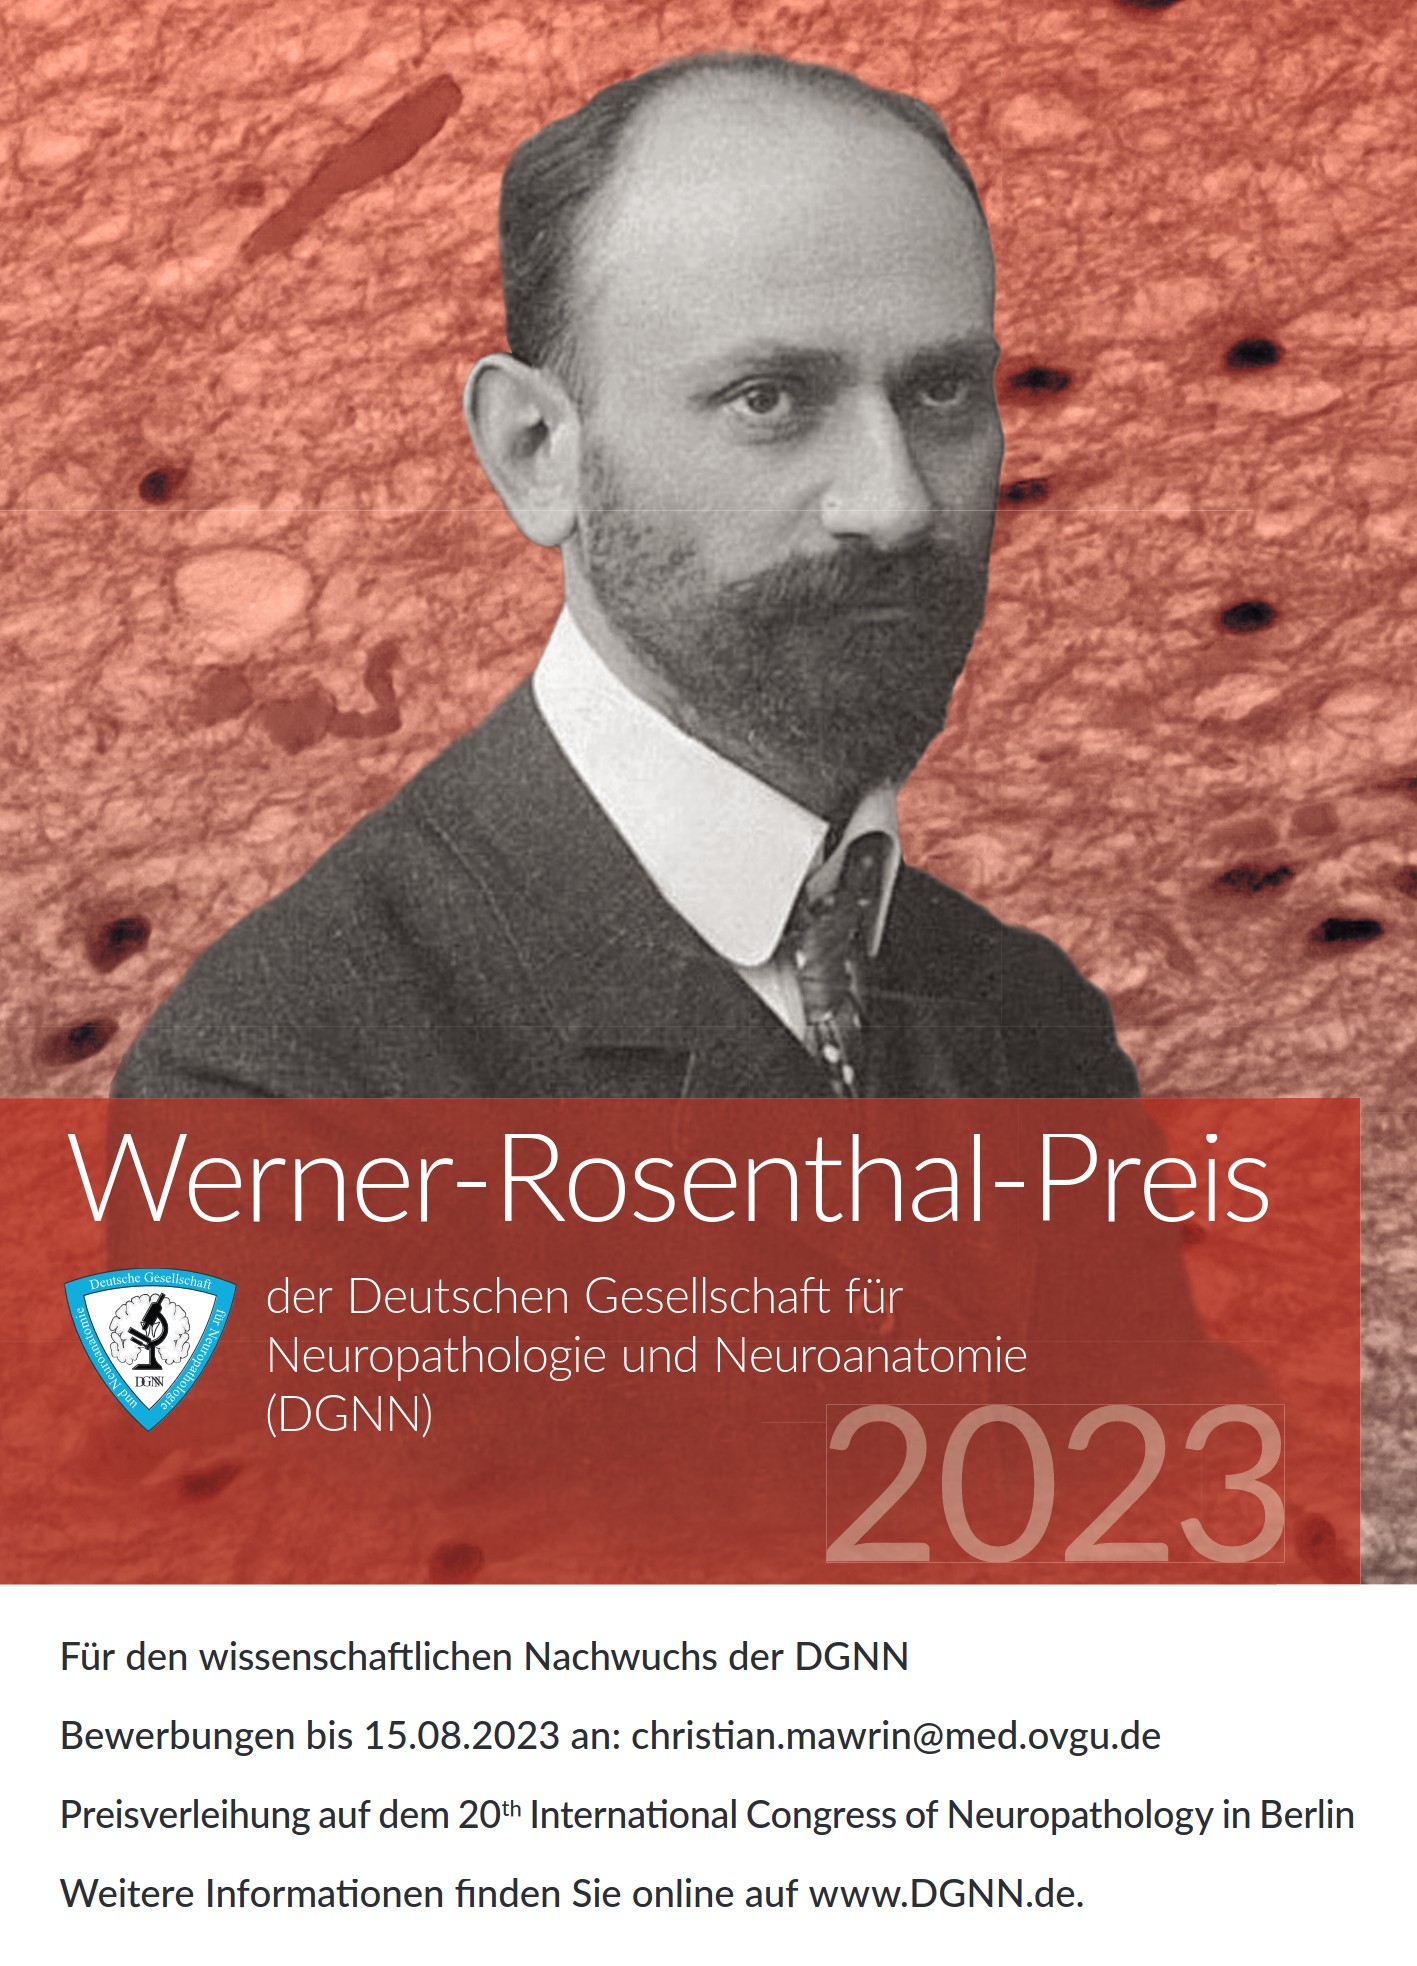 Werner Rosenthal Preis 2022 Plakat A2 1